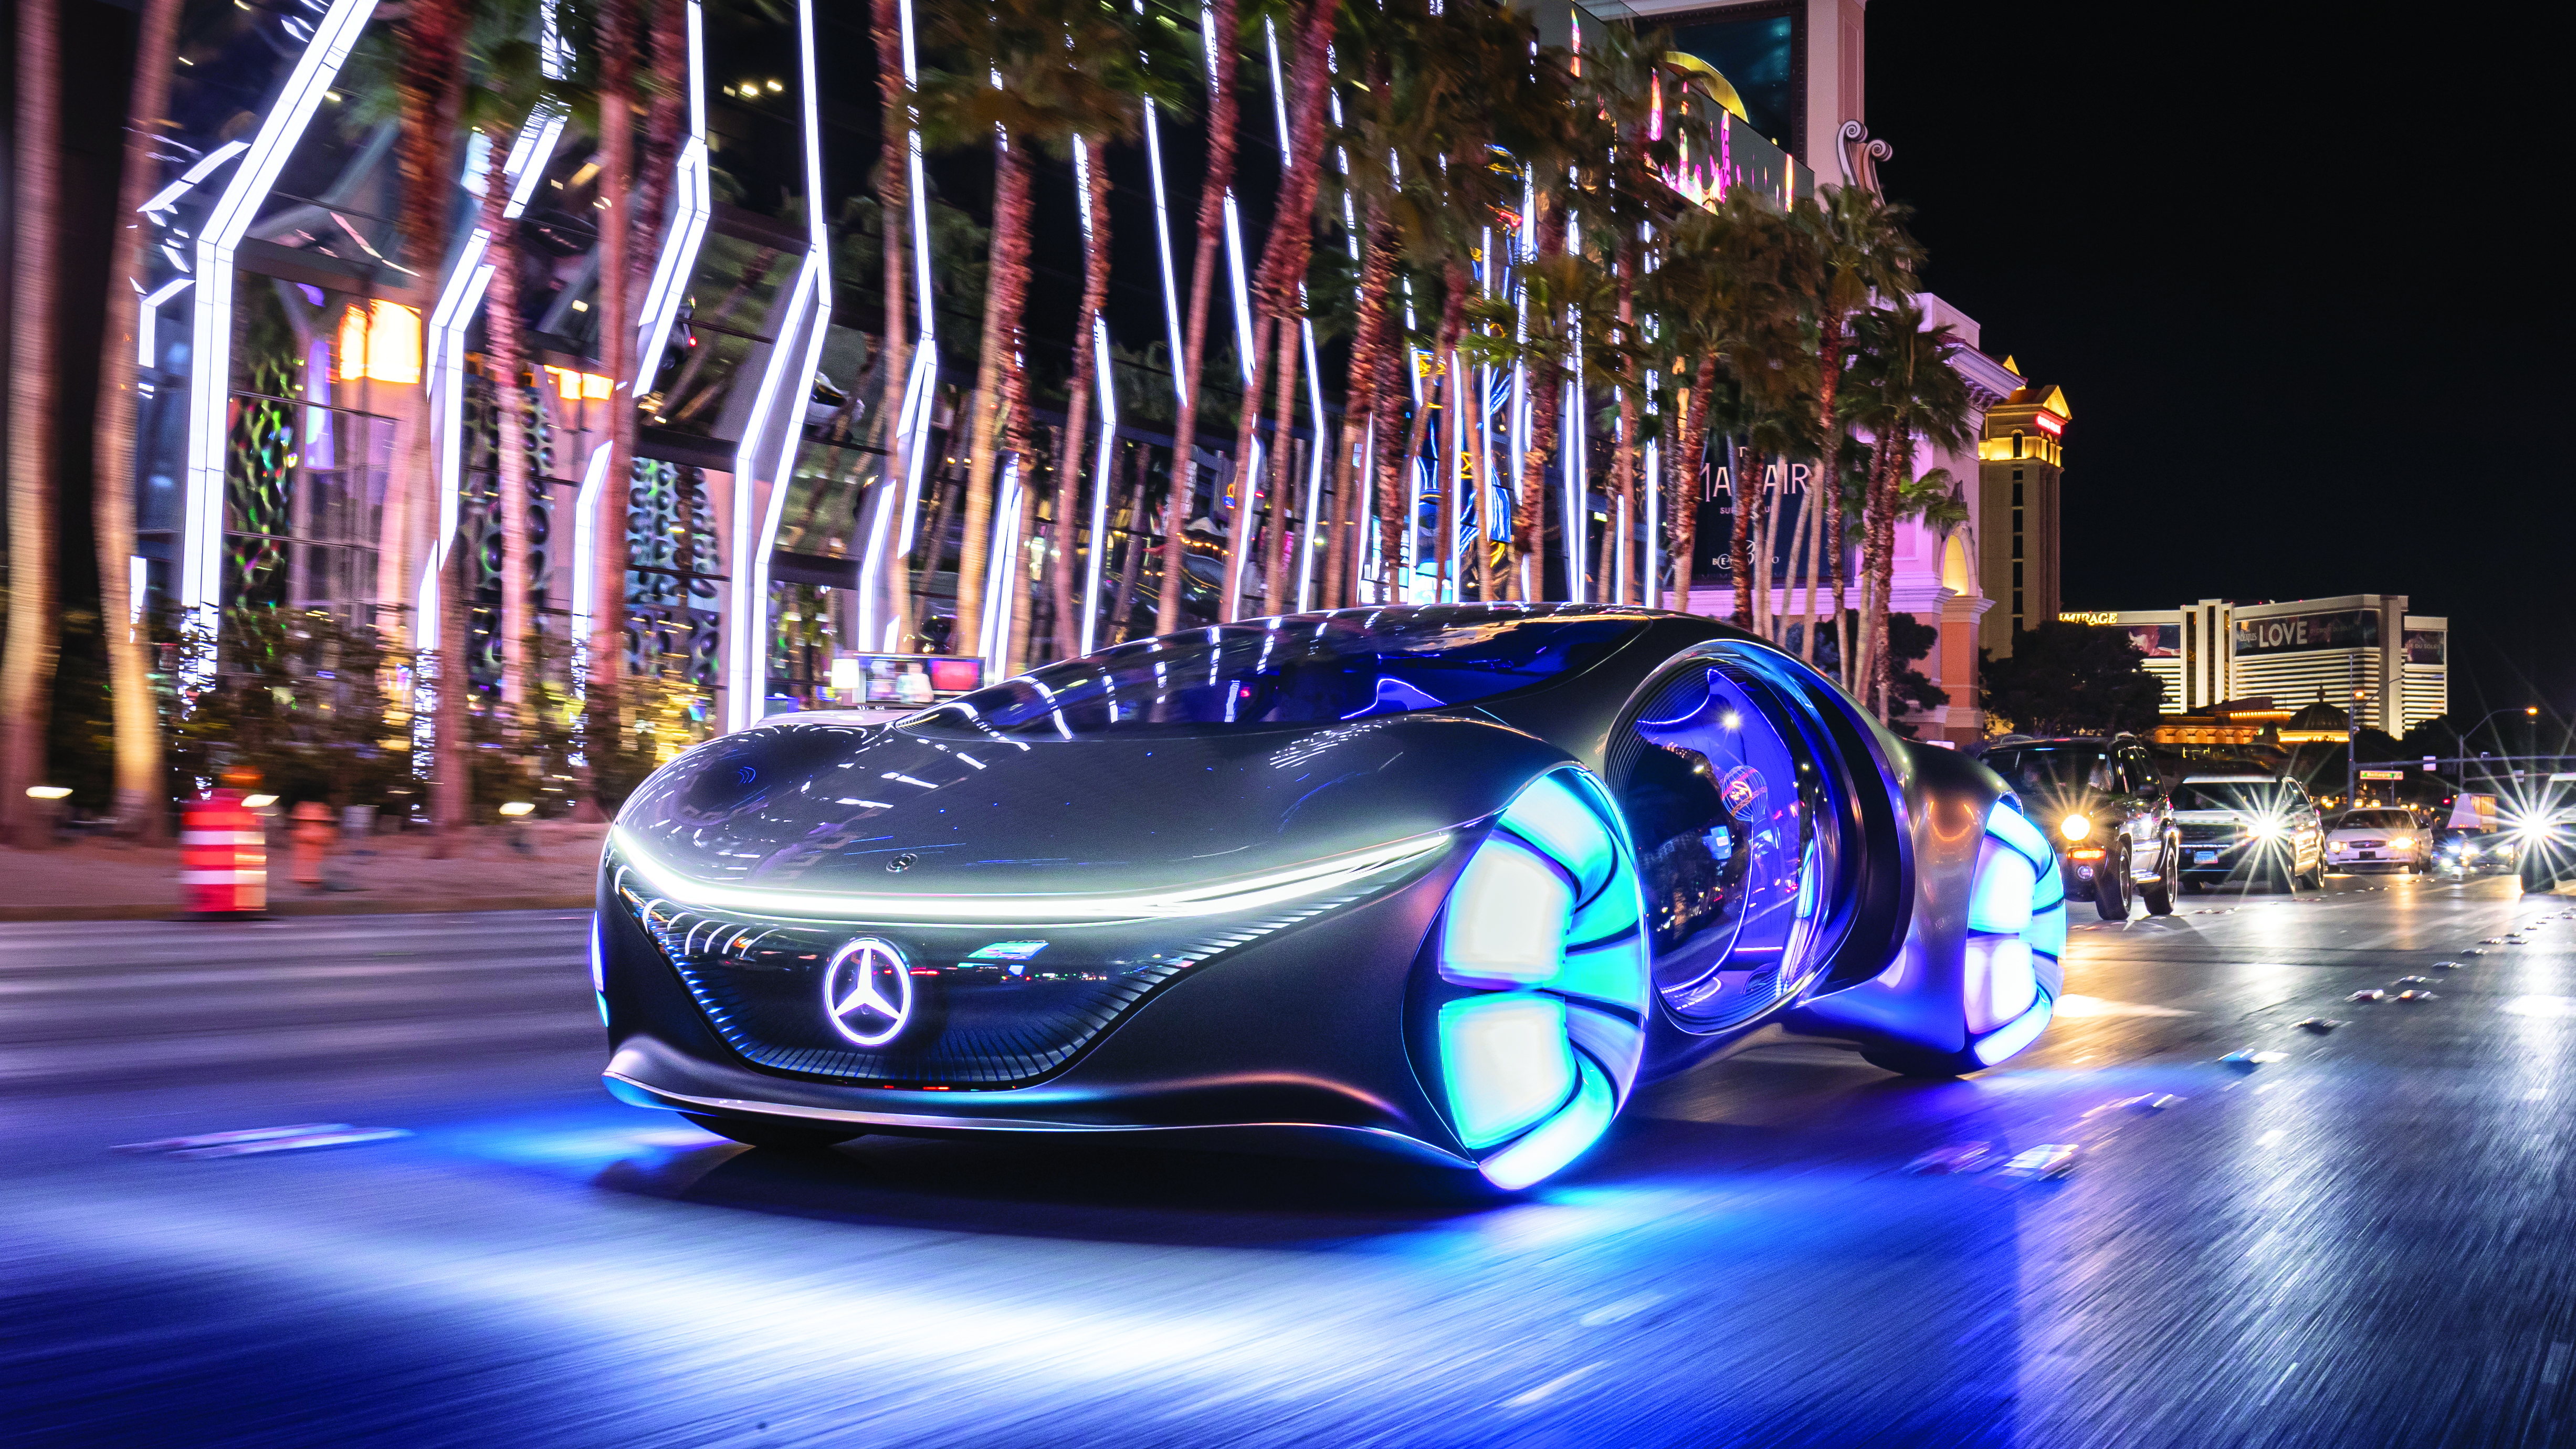 Mercedes Vision AVTR: Futurističko vozilo inspirirano Avatarom i Pandorom